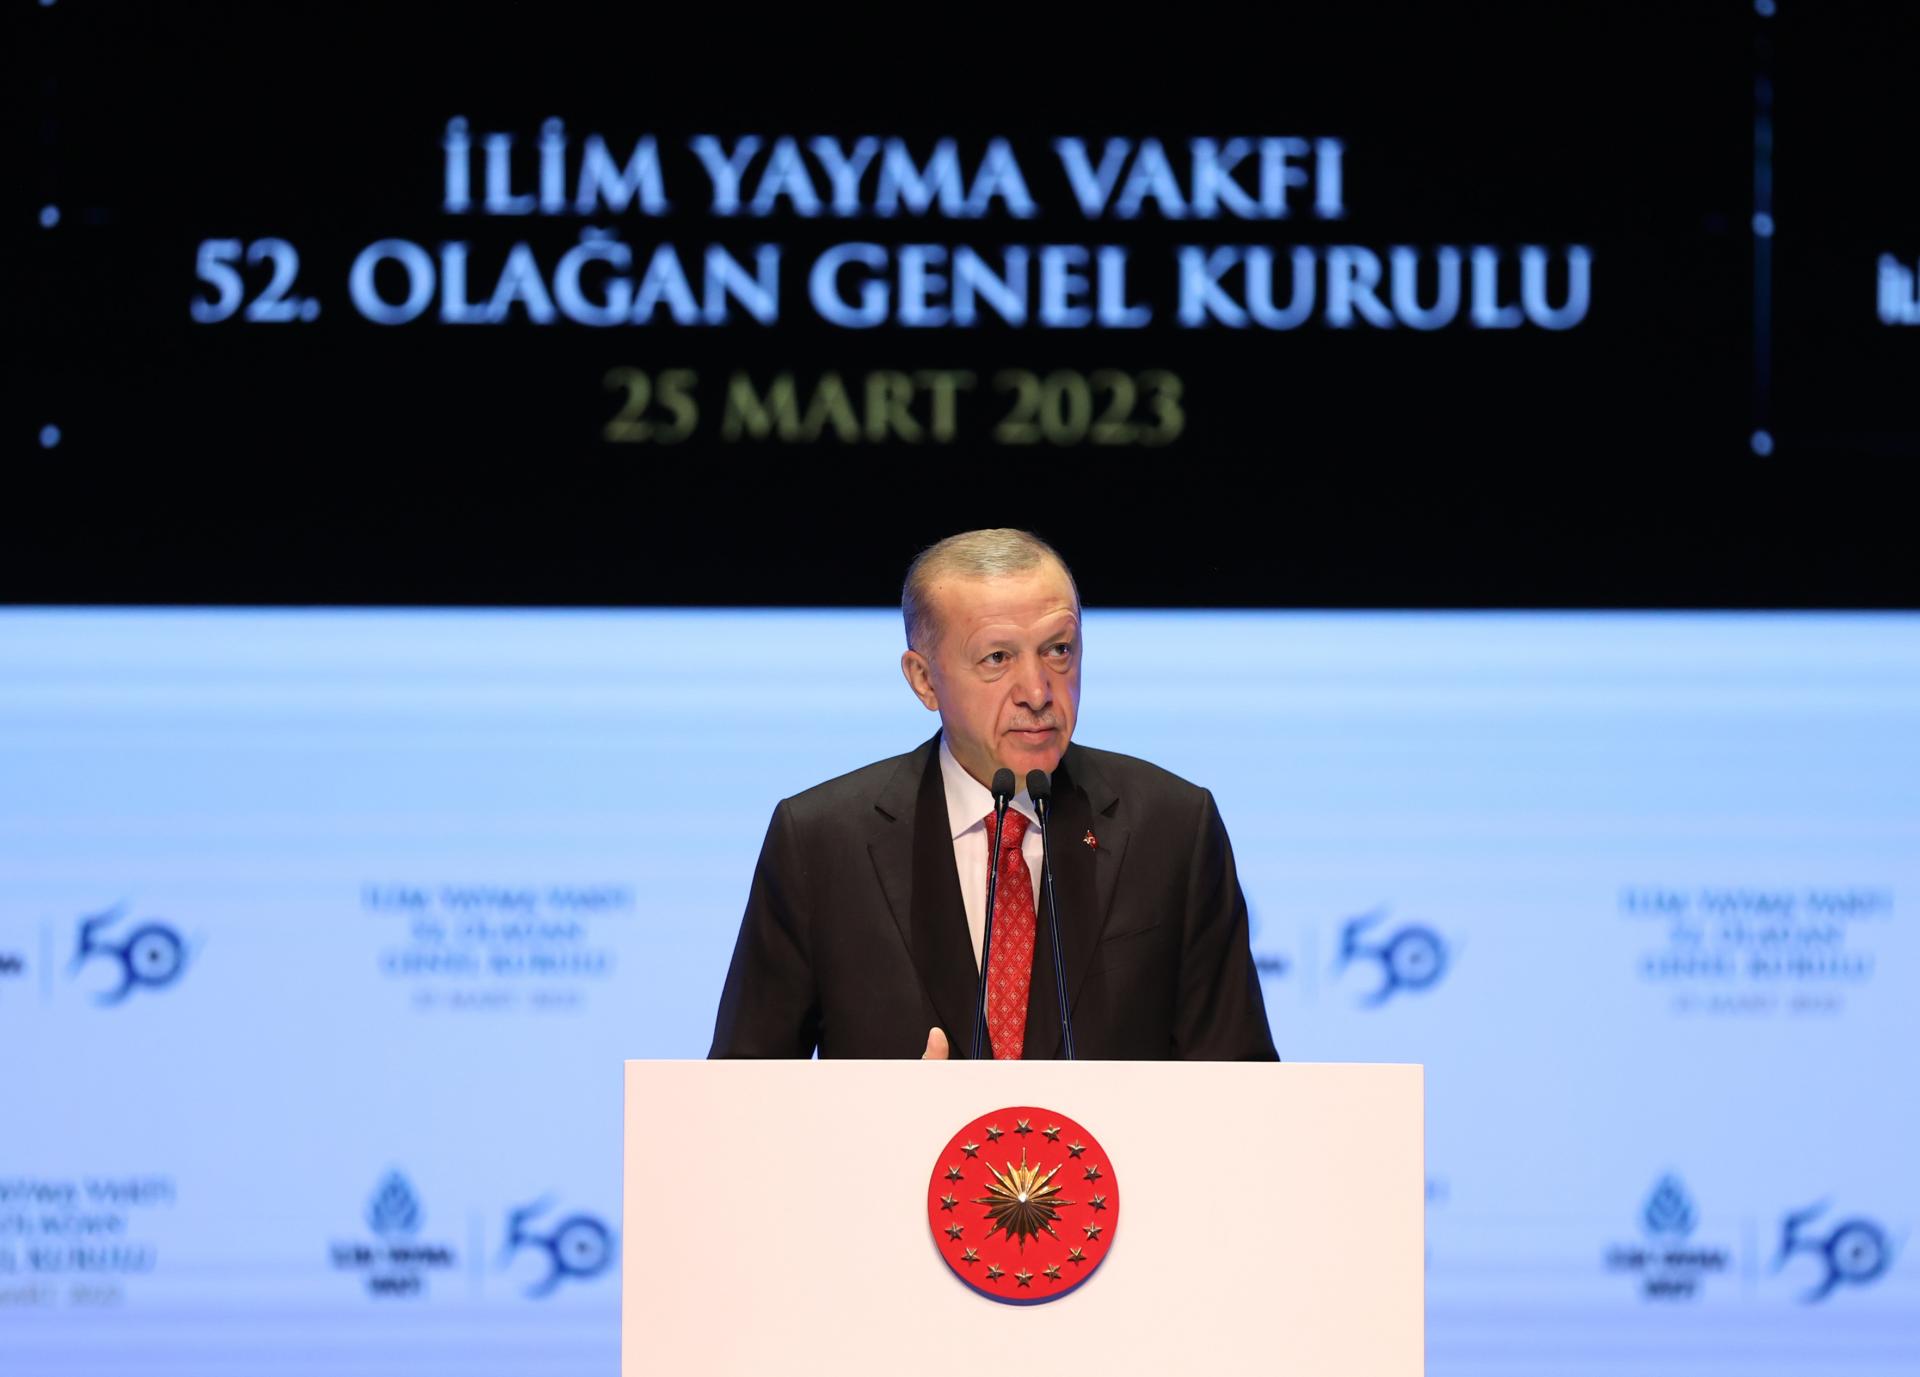 زلزلوں کے زخموں  کو مندمل کرنے کی کوششوں اور صدی کے منصوبوں پر بھی کام جاری ہے،  ترک صدر